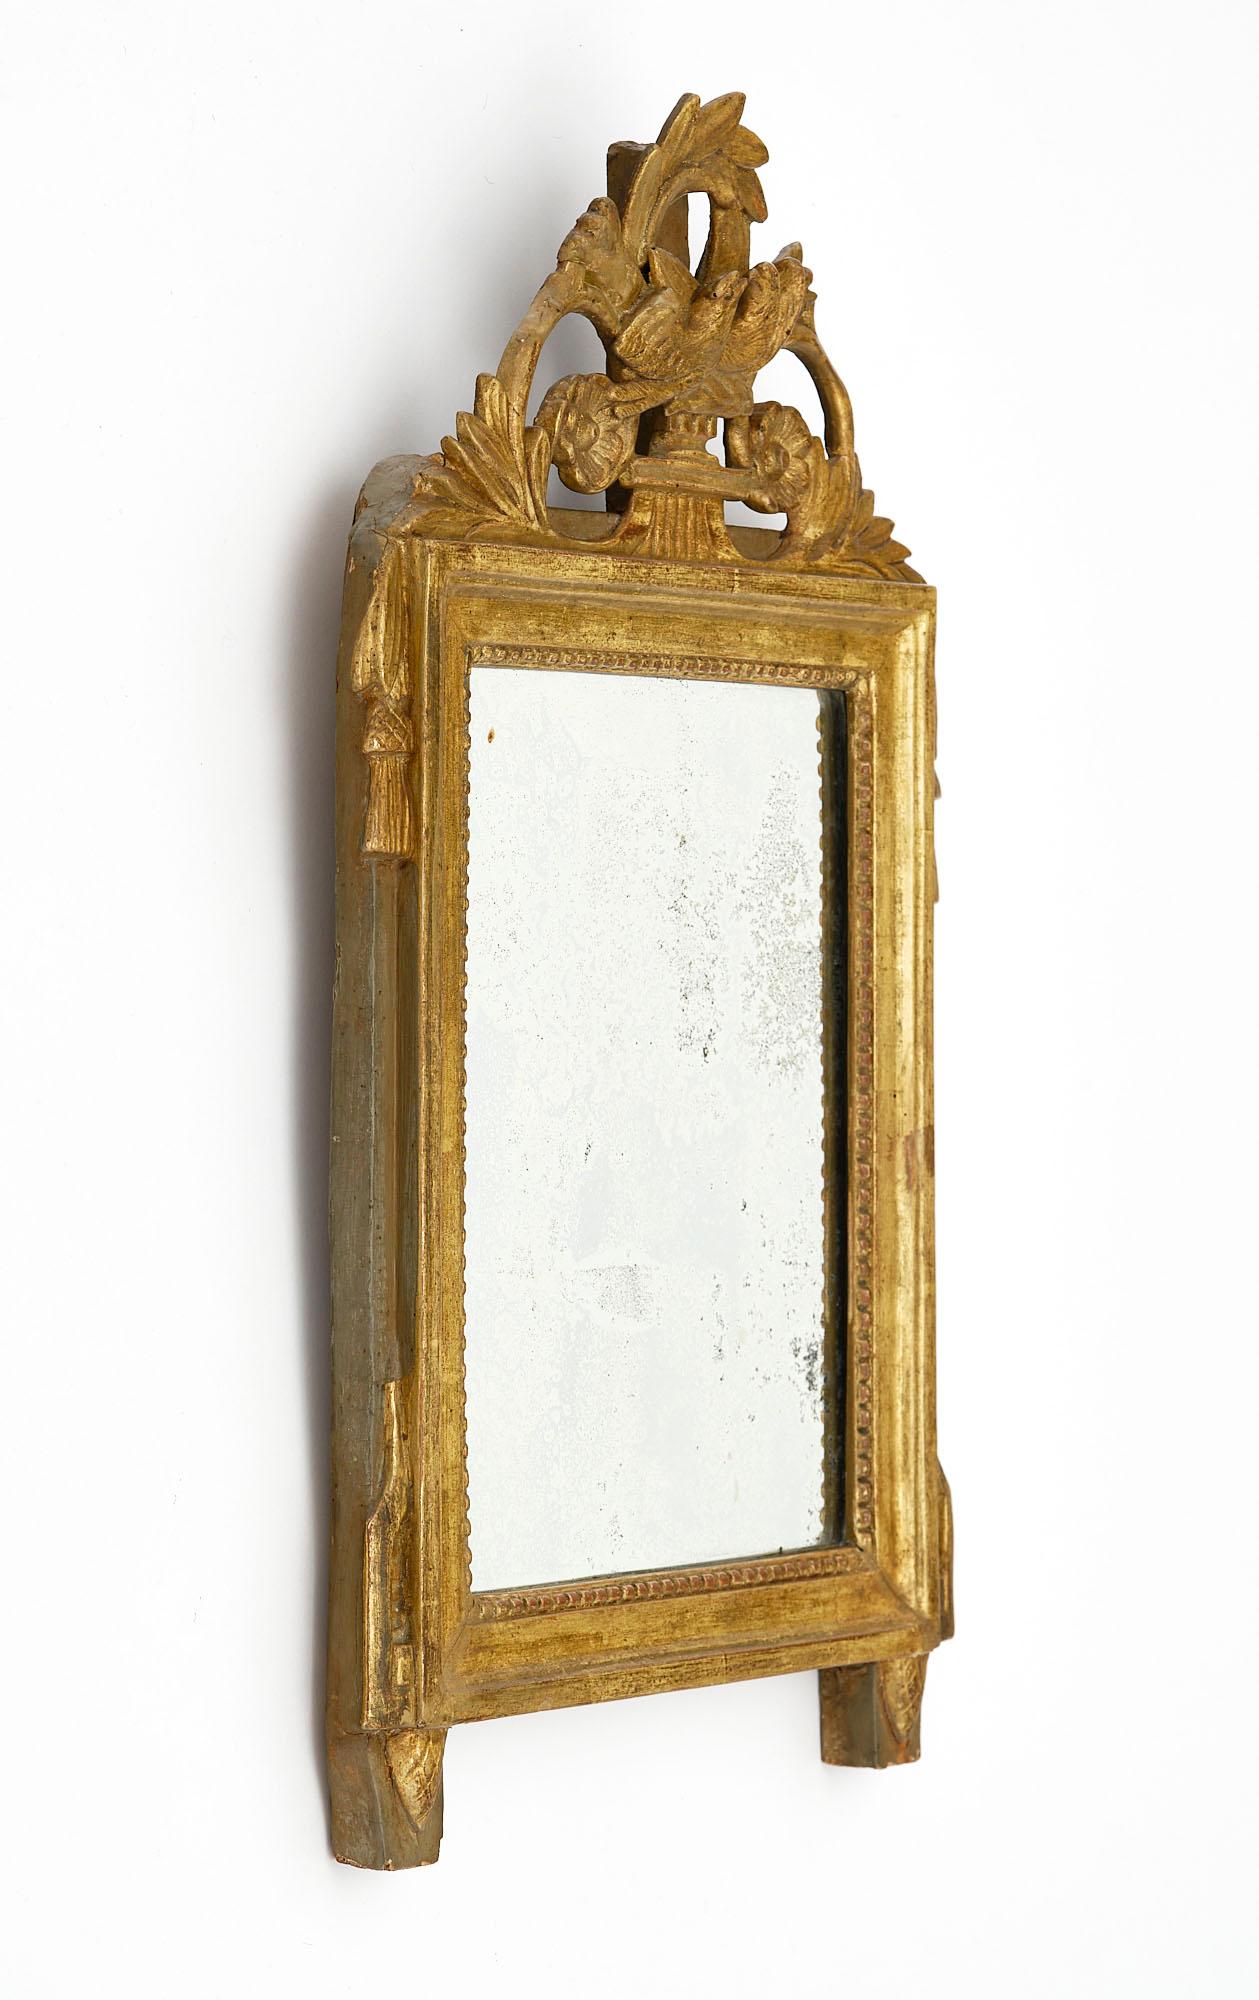 Spiegel aus Frankreich aus der Zeit Ludwigs XVI. Dieses Stück ist aus handgeschnitztem Holz mit Stuck und einer Front mit Vögeln, Blumenmotiven und einem Lorbeerkranz gefertigt. Die 24-karätige Blattvergoldung ist original, ebenso wie der originale